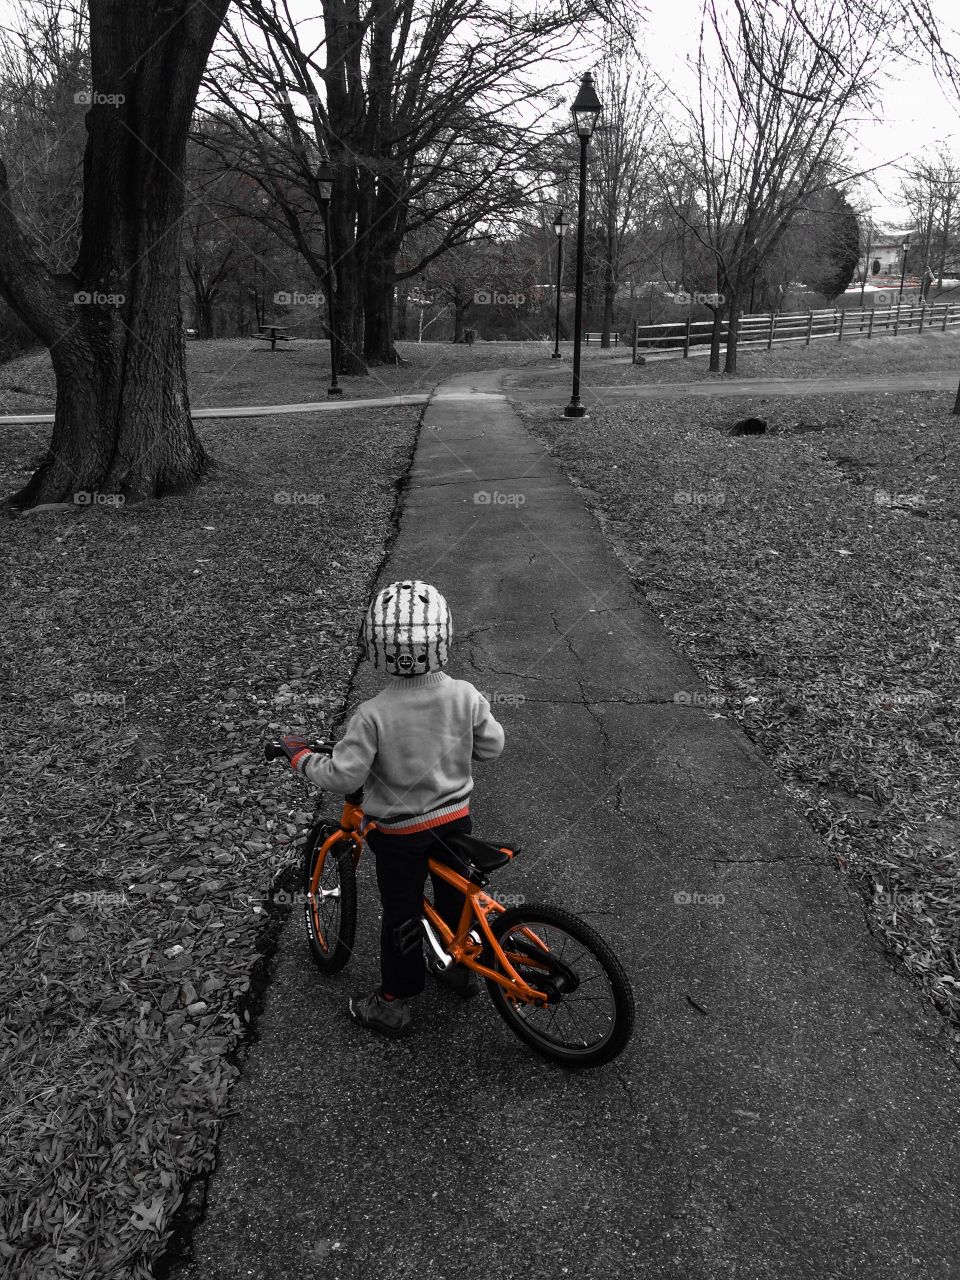 Child on bike - winter cycling